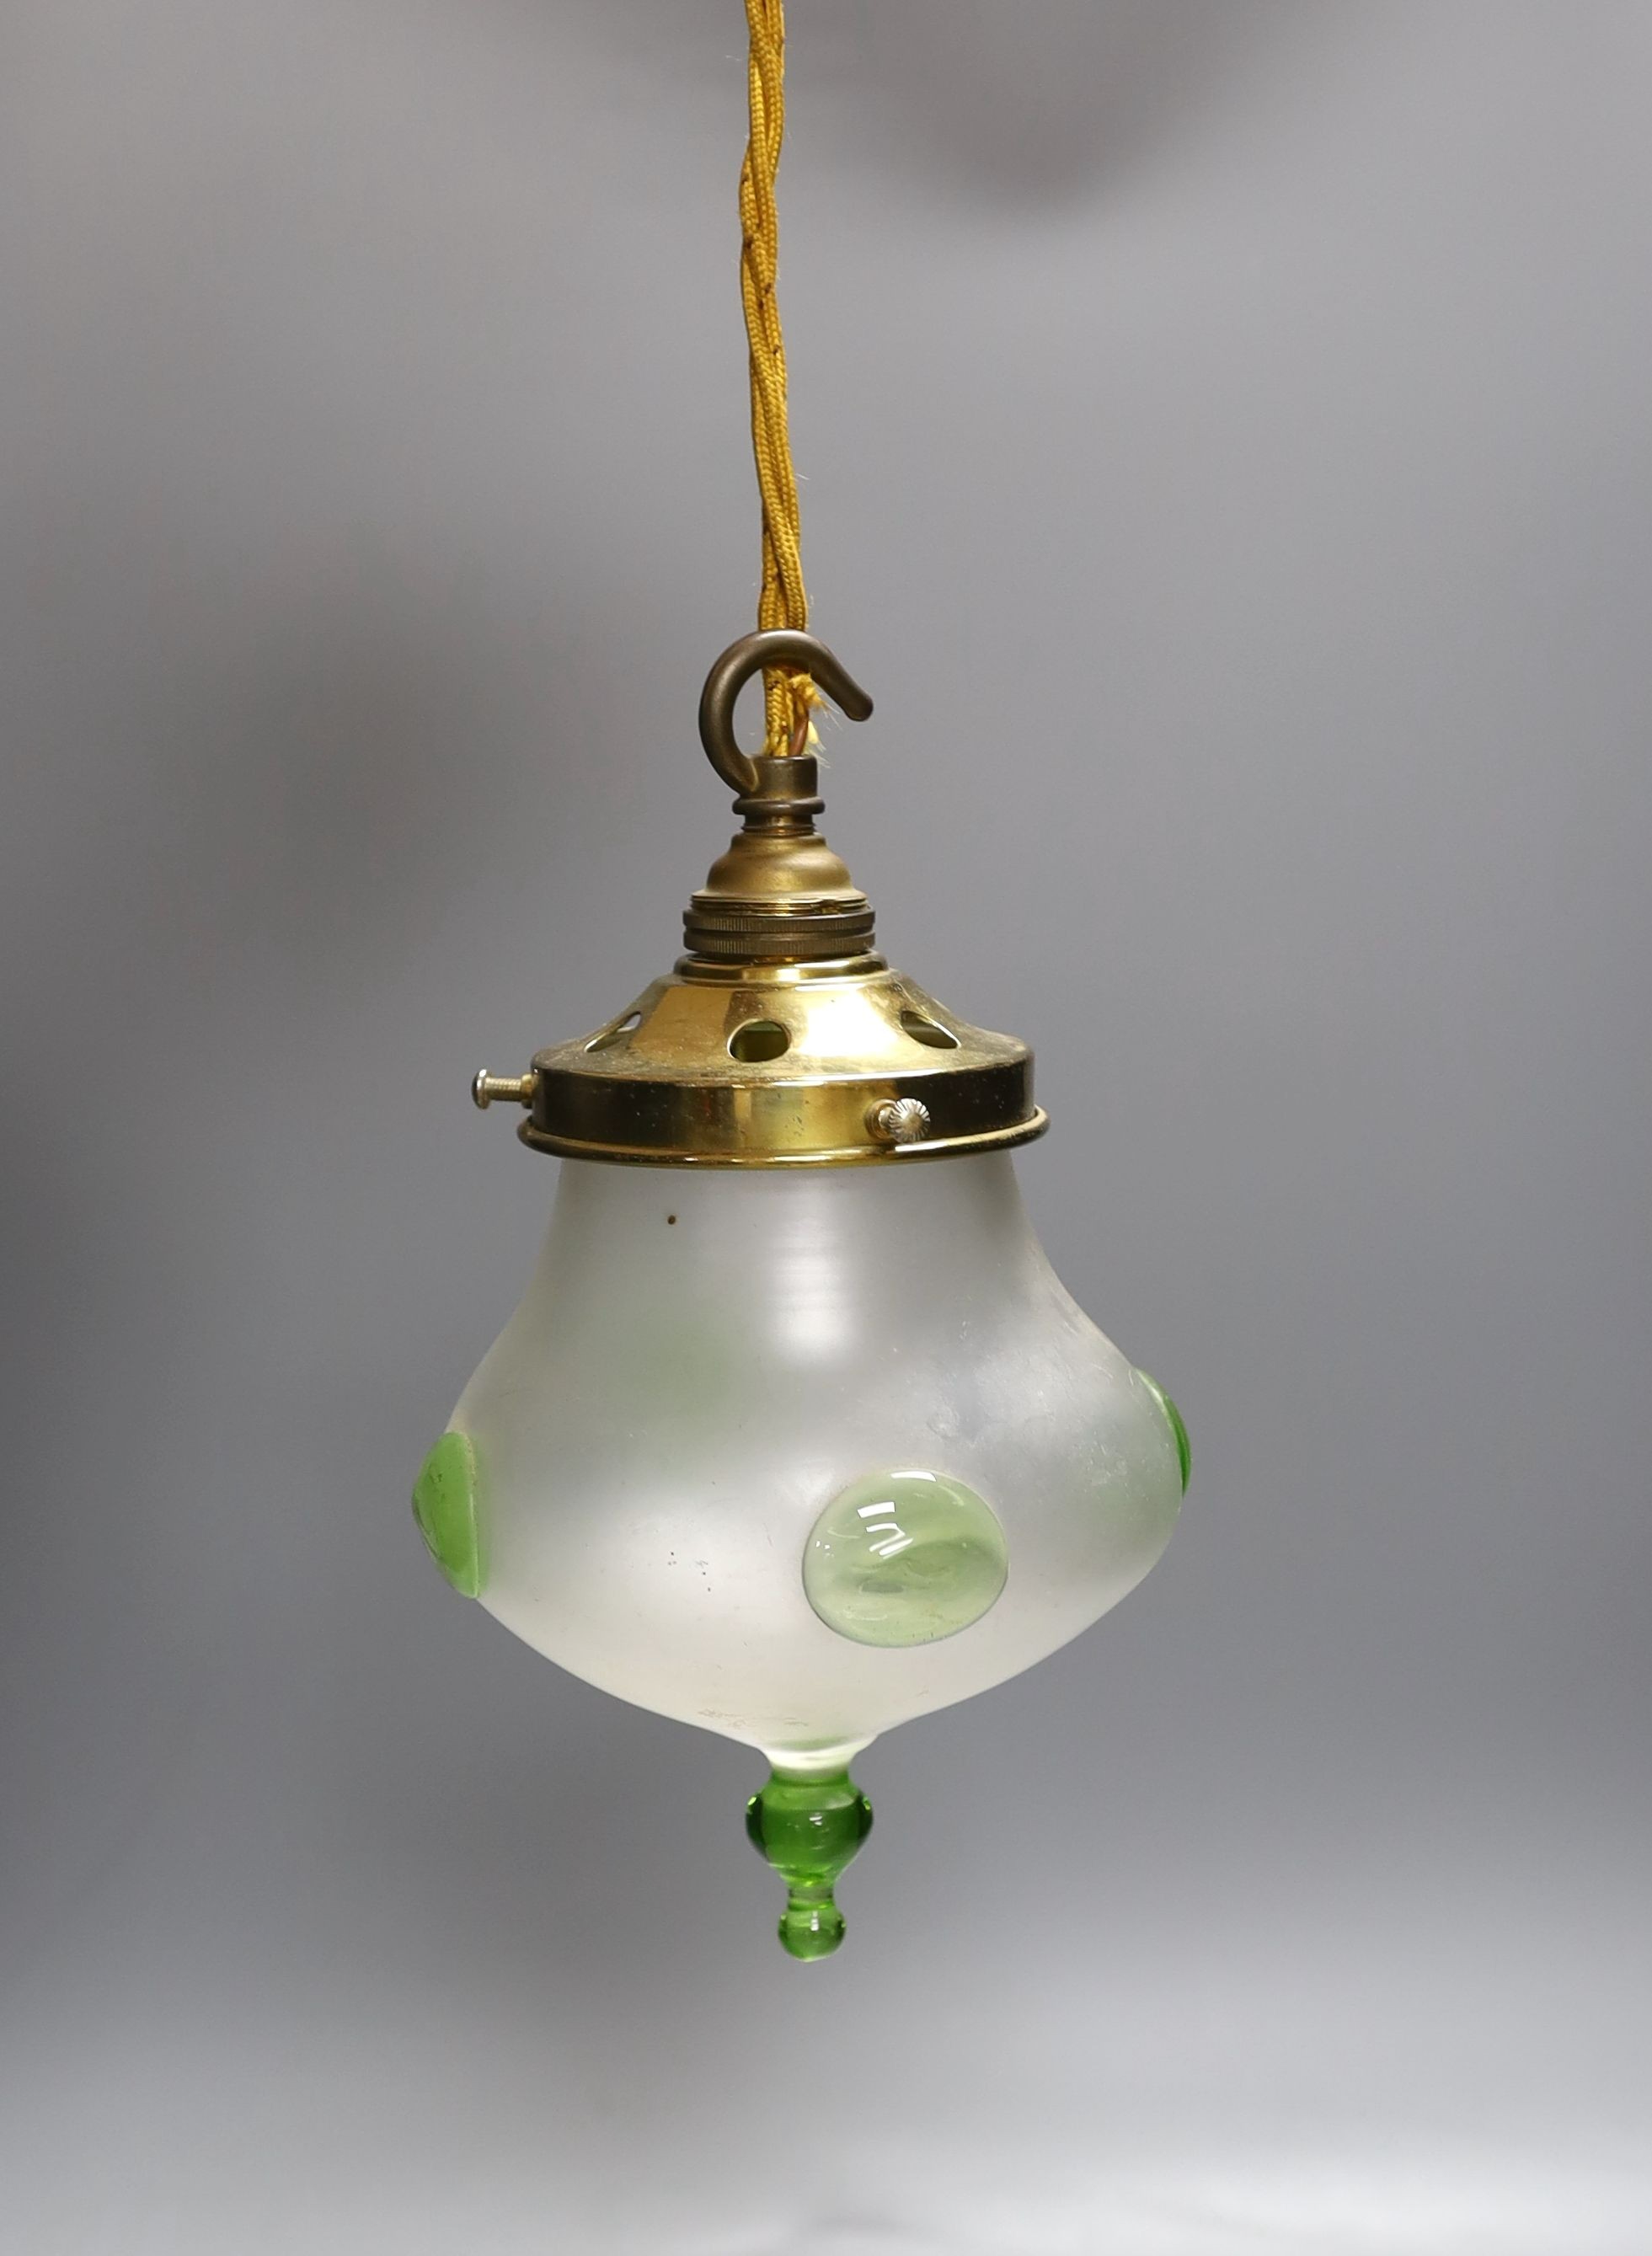 An Art Nouveau light pendant - approx 24cm high